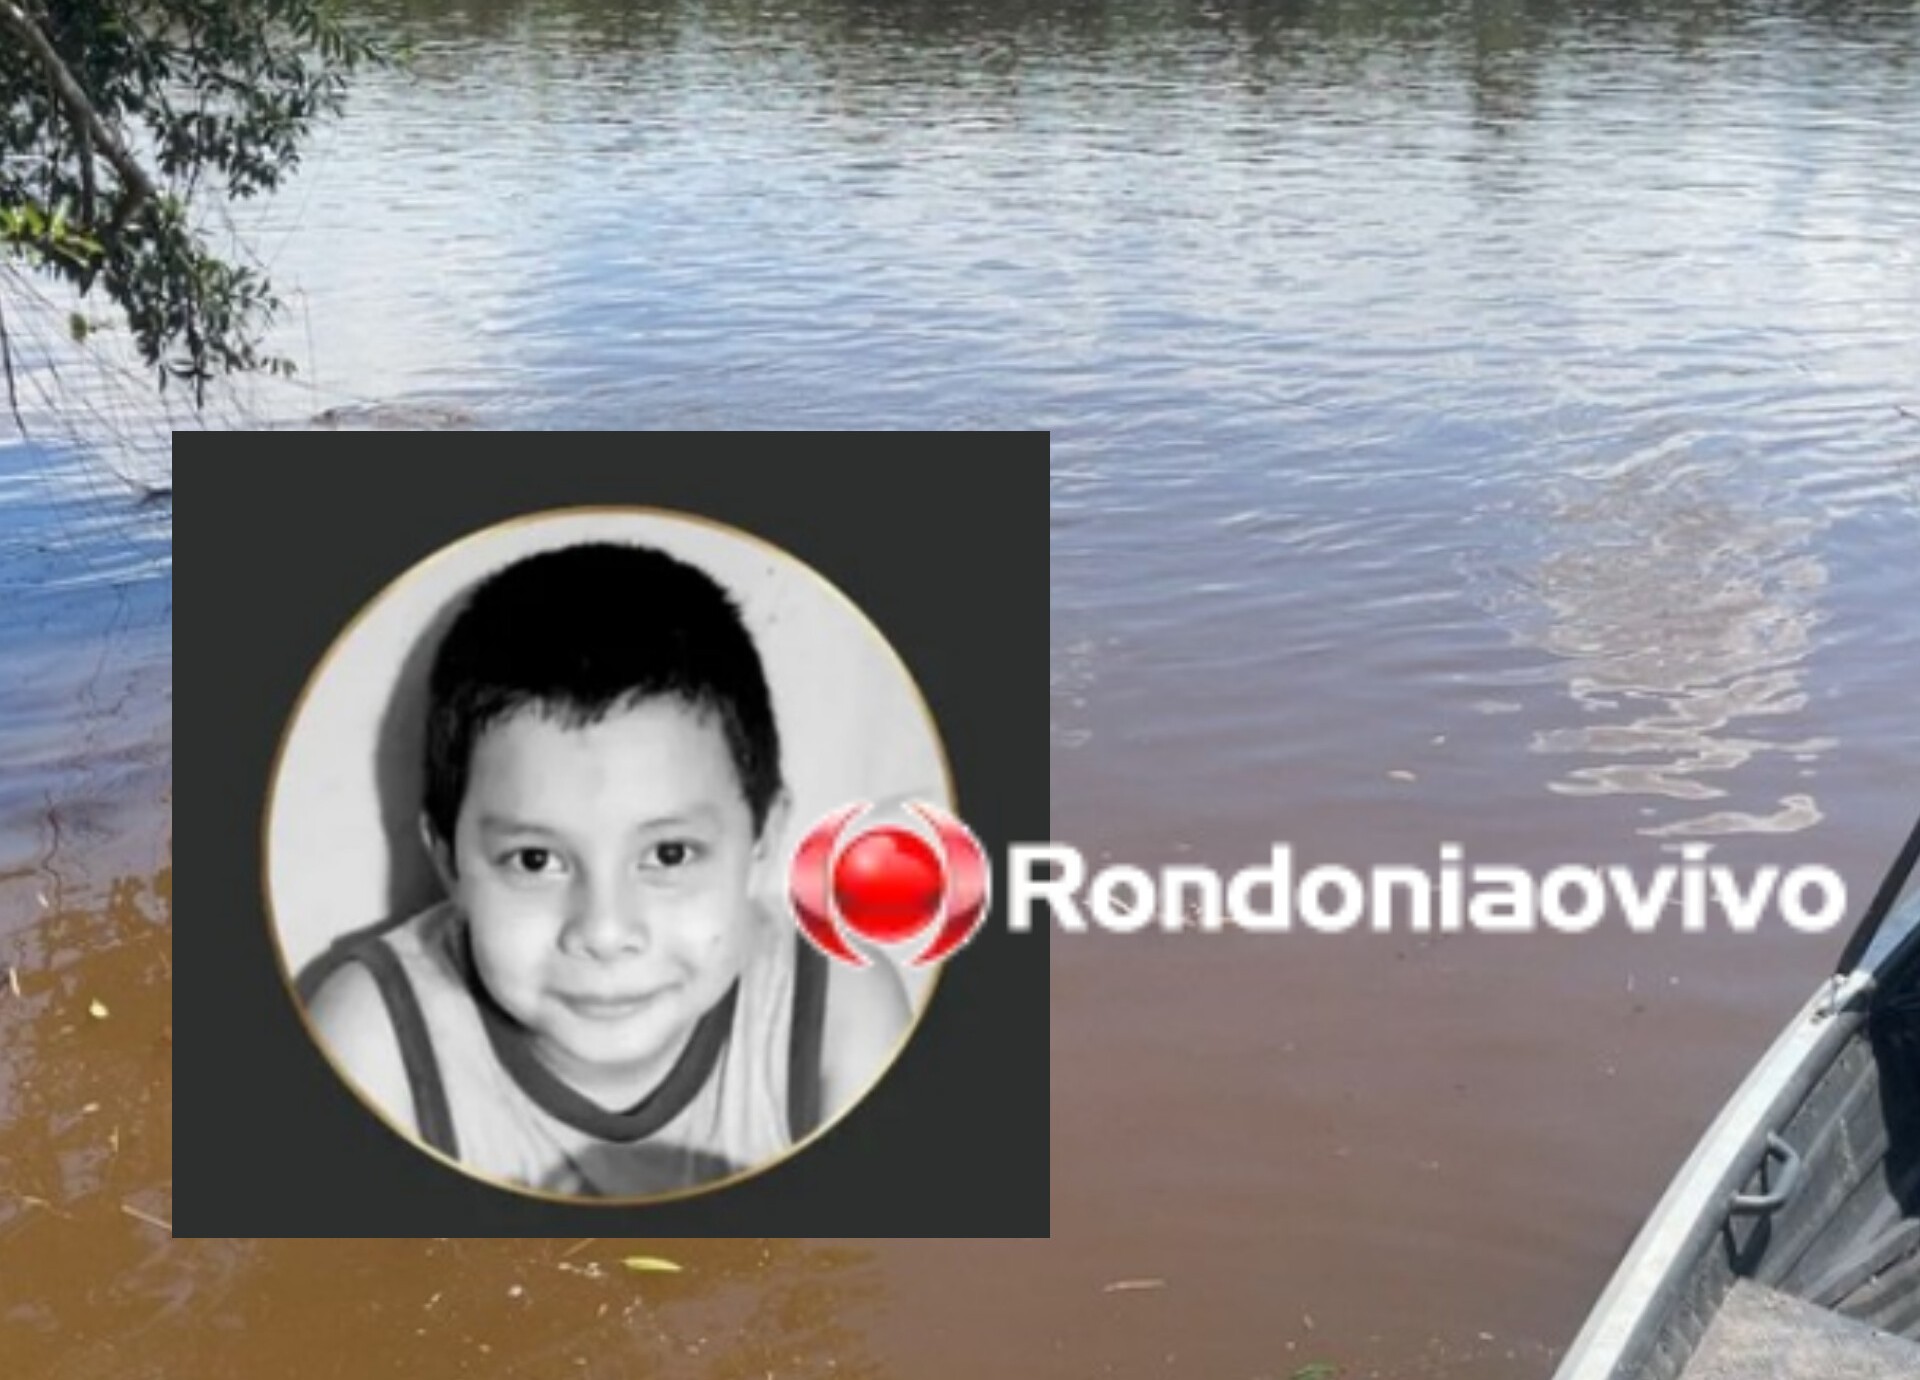 TRÁGICO: Filho de vice-prefeito morre afogado em rio